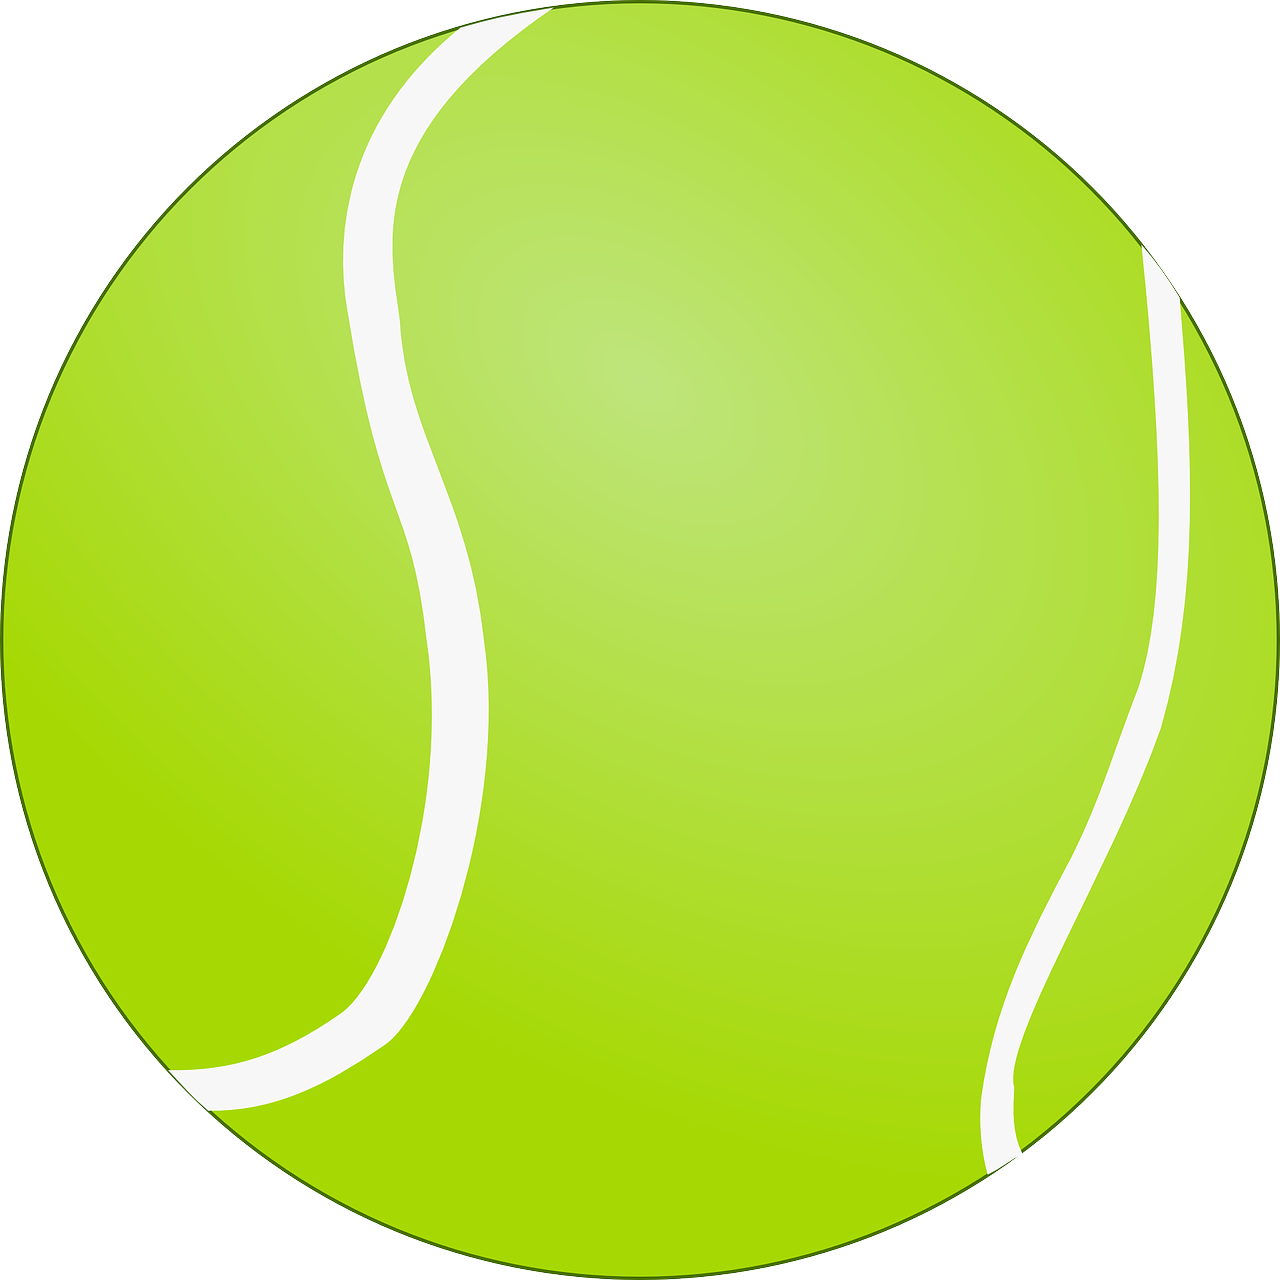 tennis ball tennis ball free photo